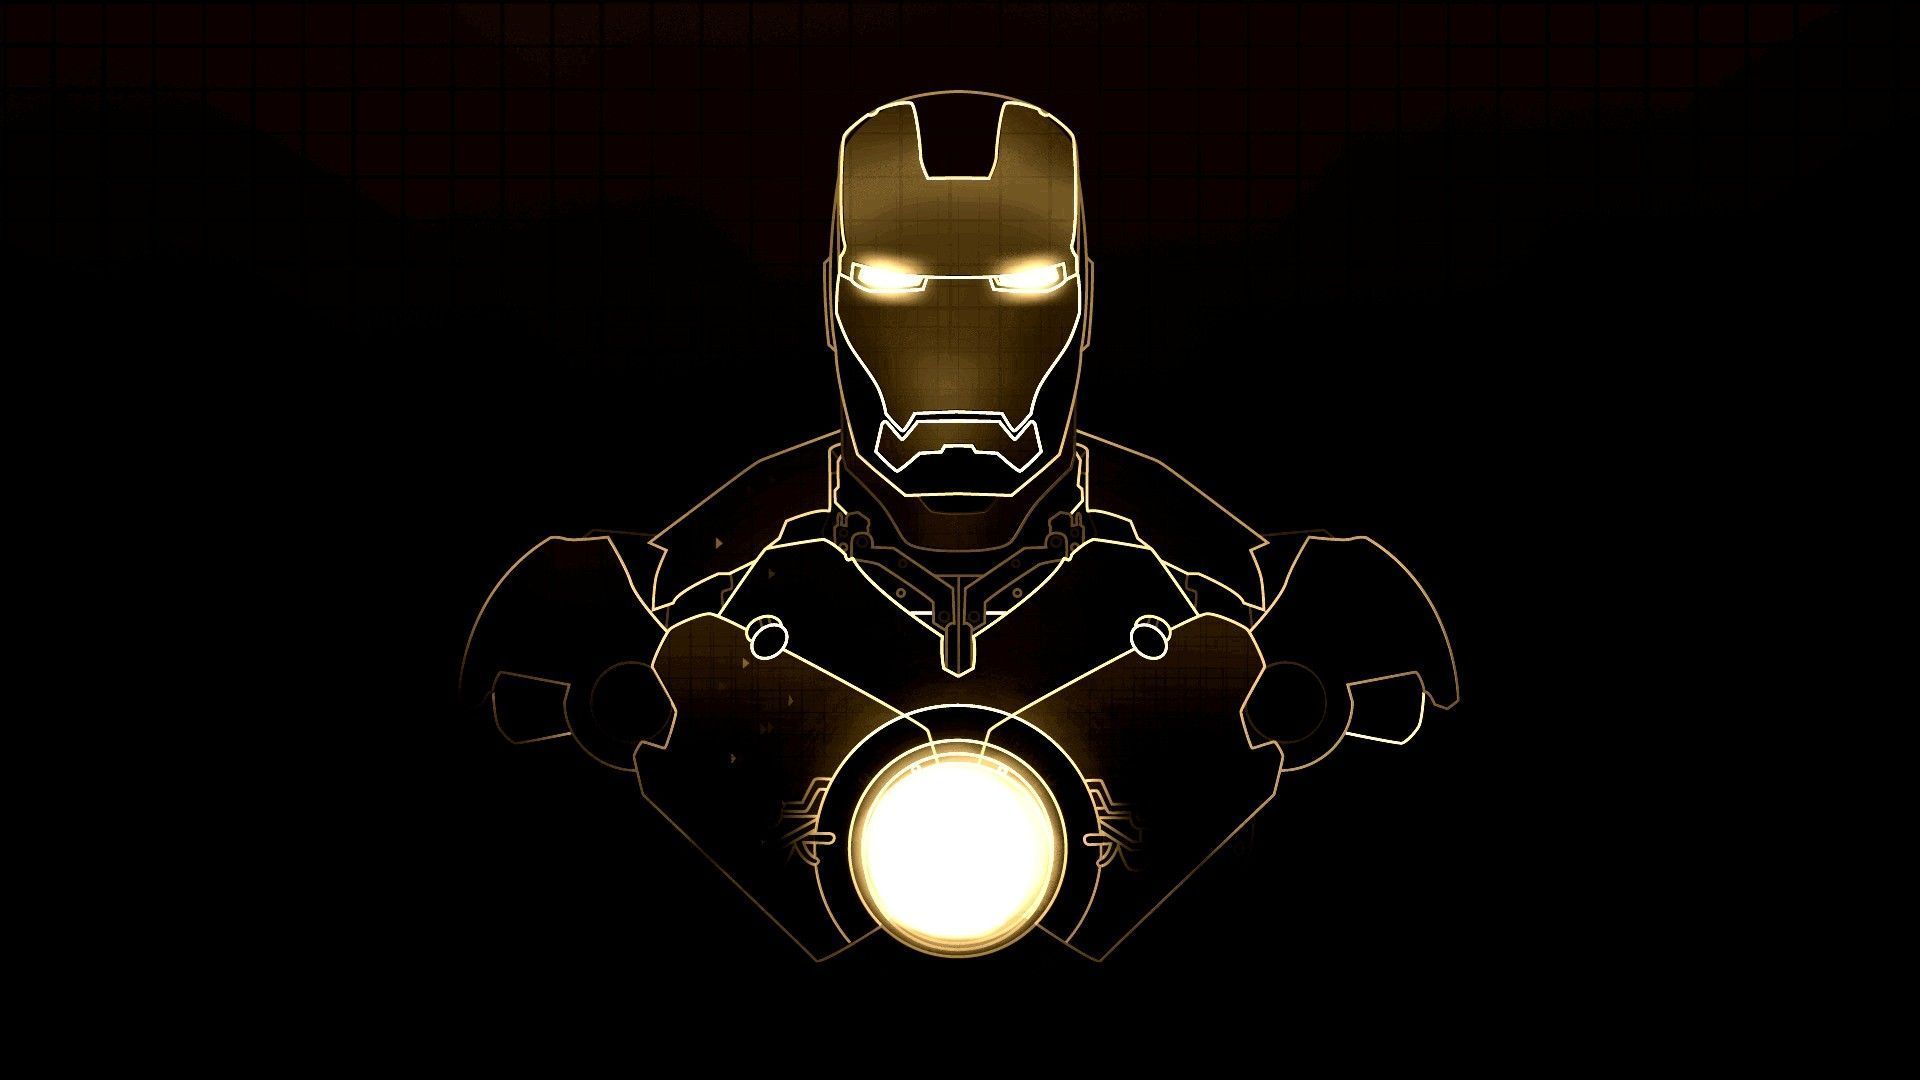 Iron Man HD Wallpaper | 1920x1080 | ID:38044